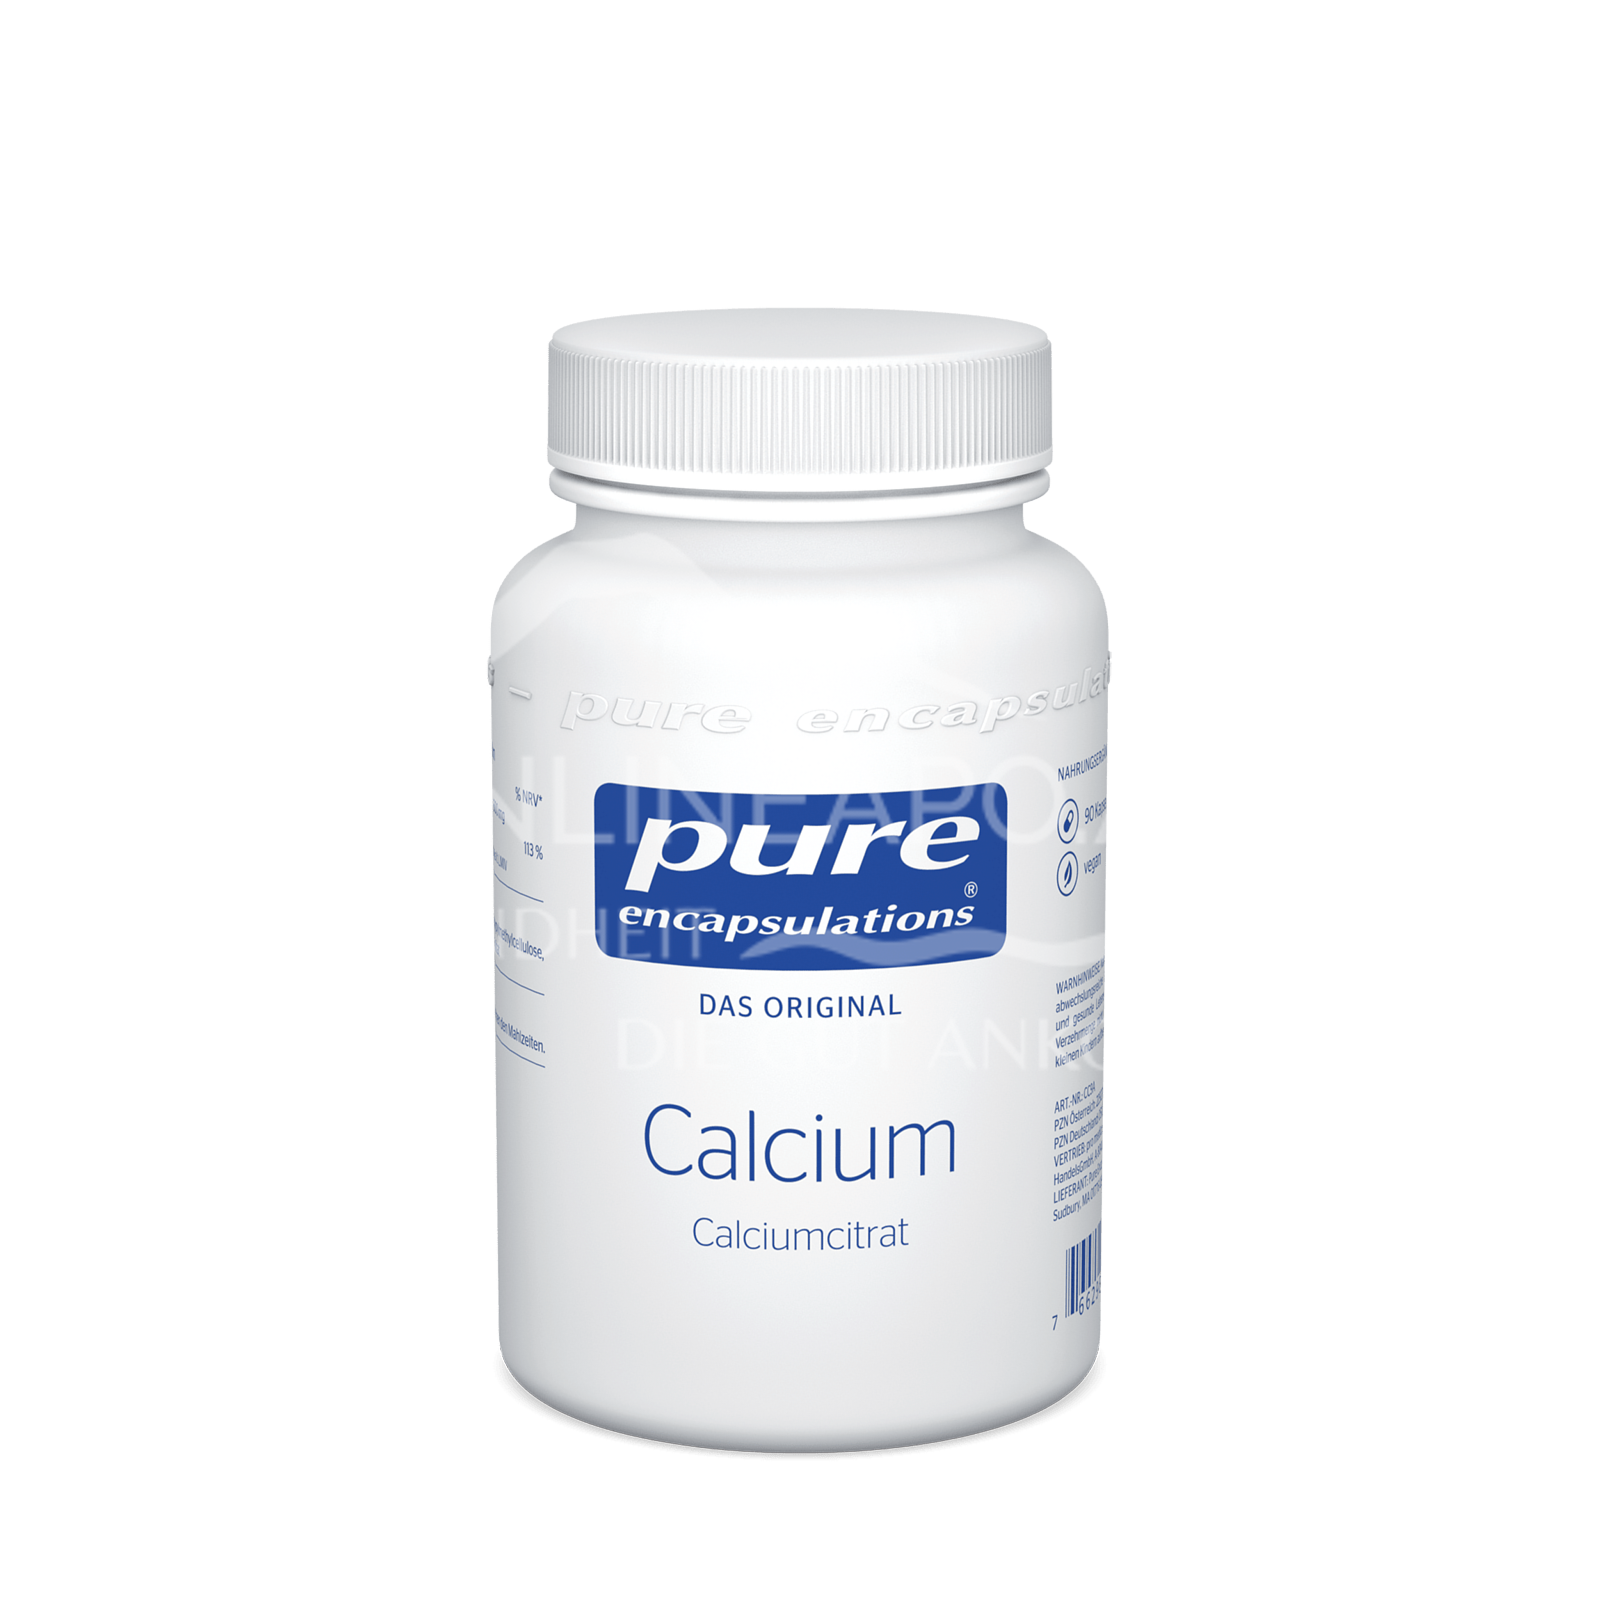 pure encapsulations® Calcium Calciumcitrat